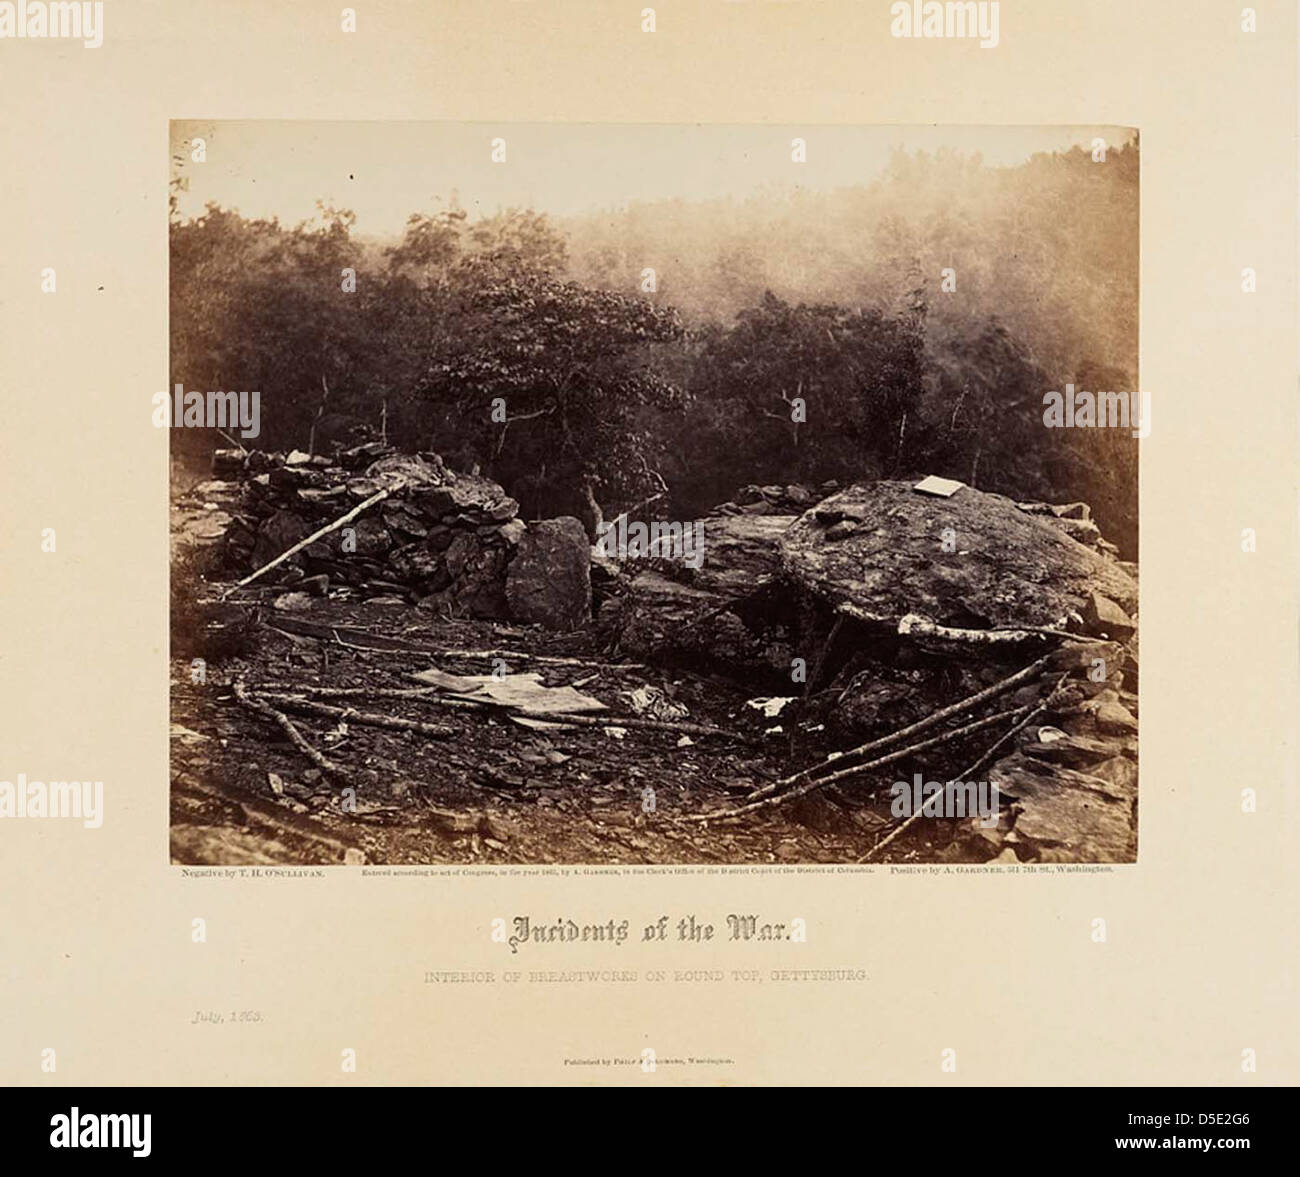 Ereignisse des Krieges: Innenraum der Breastworks auf Round Top, Gettysburg Stockfoto